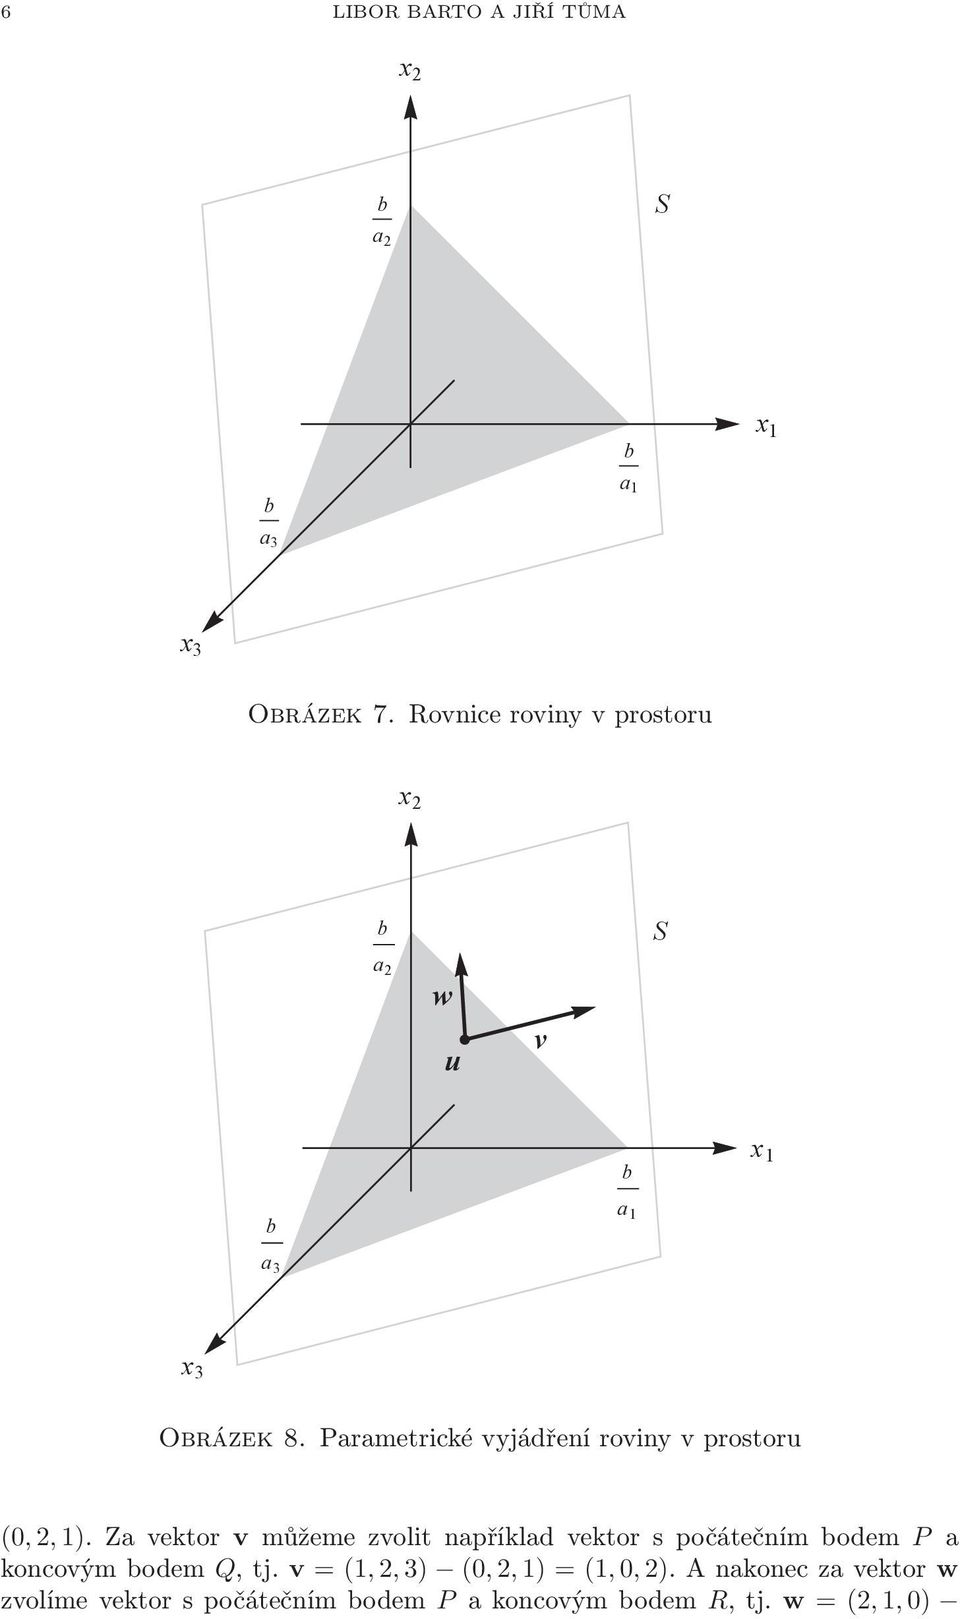 (0,2,1)Zavektor vmůžemezvolitnapříkladvektorspočátečnímbodem P a koncovýmbodem Q,tj v =